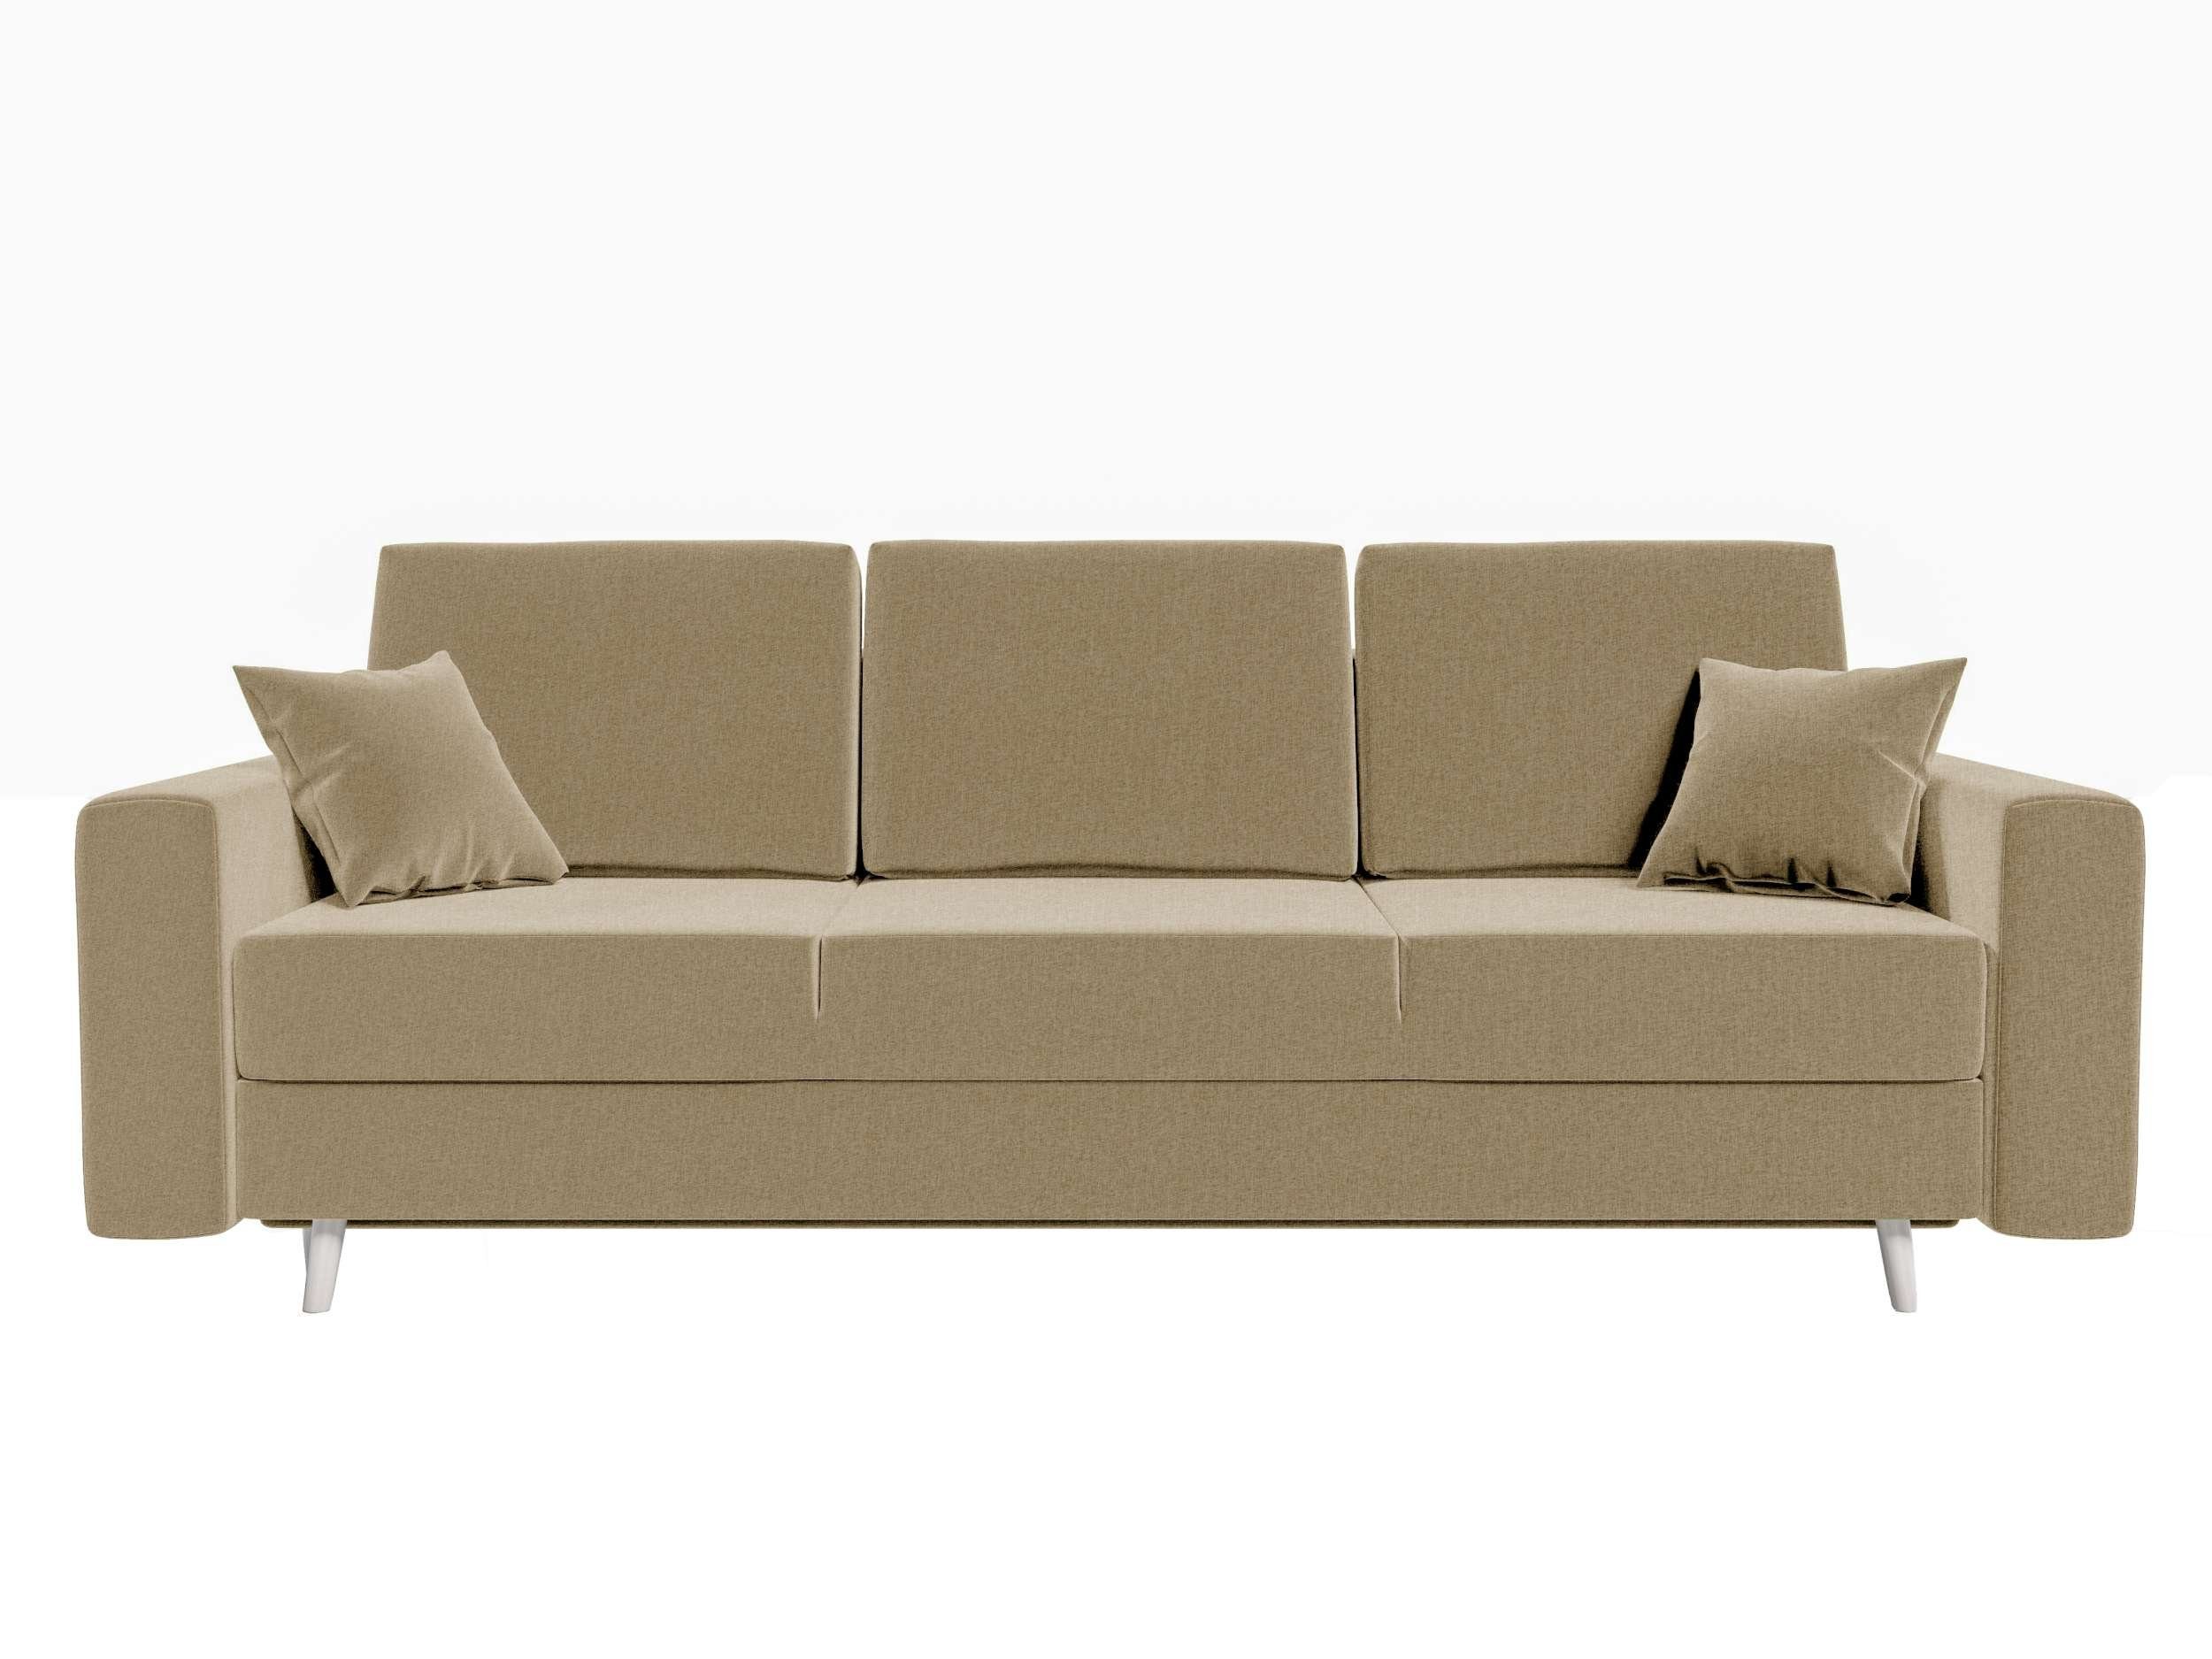 Bettfunktion, Stylefy Bettkasten, Sofa, Sitzkomfort, 3-Sitzer Modern Carmen, Schlafsofa, mit mit Design